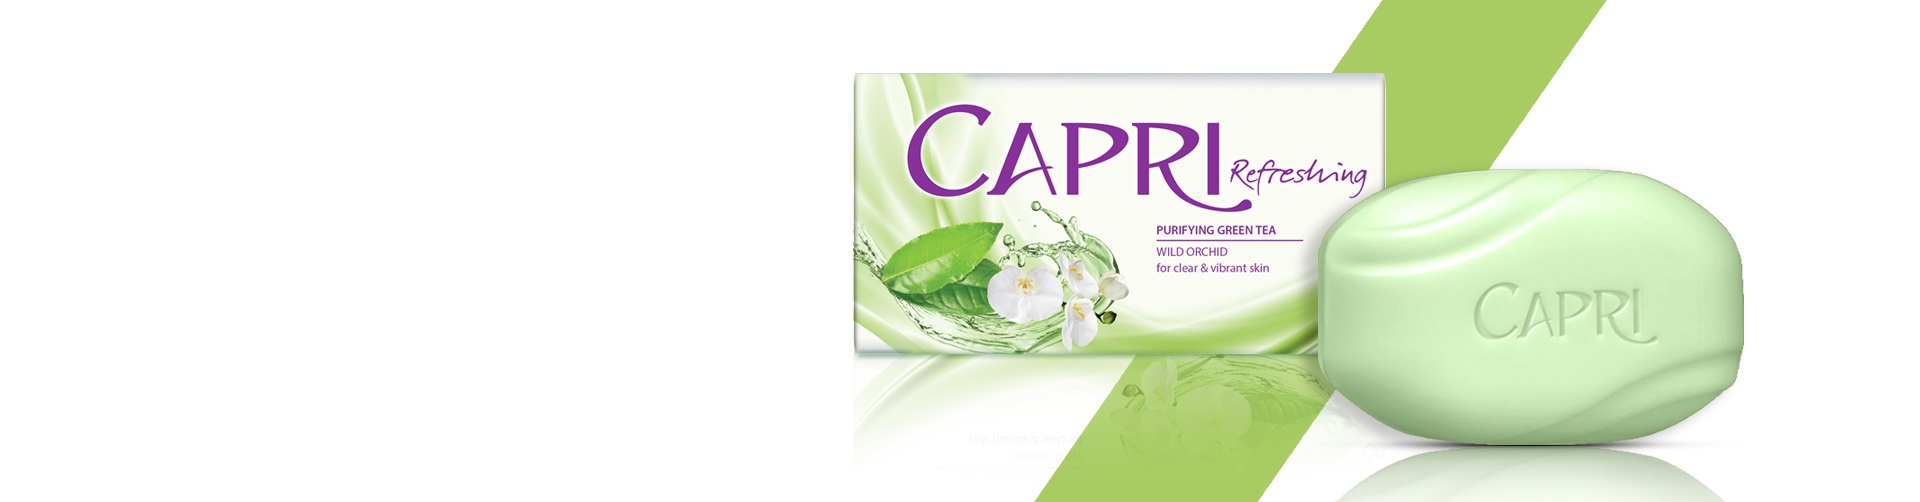 Capri Purifying Green Tea